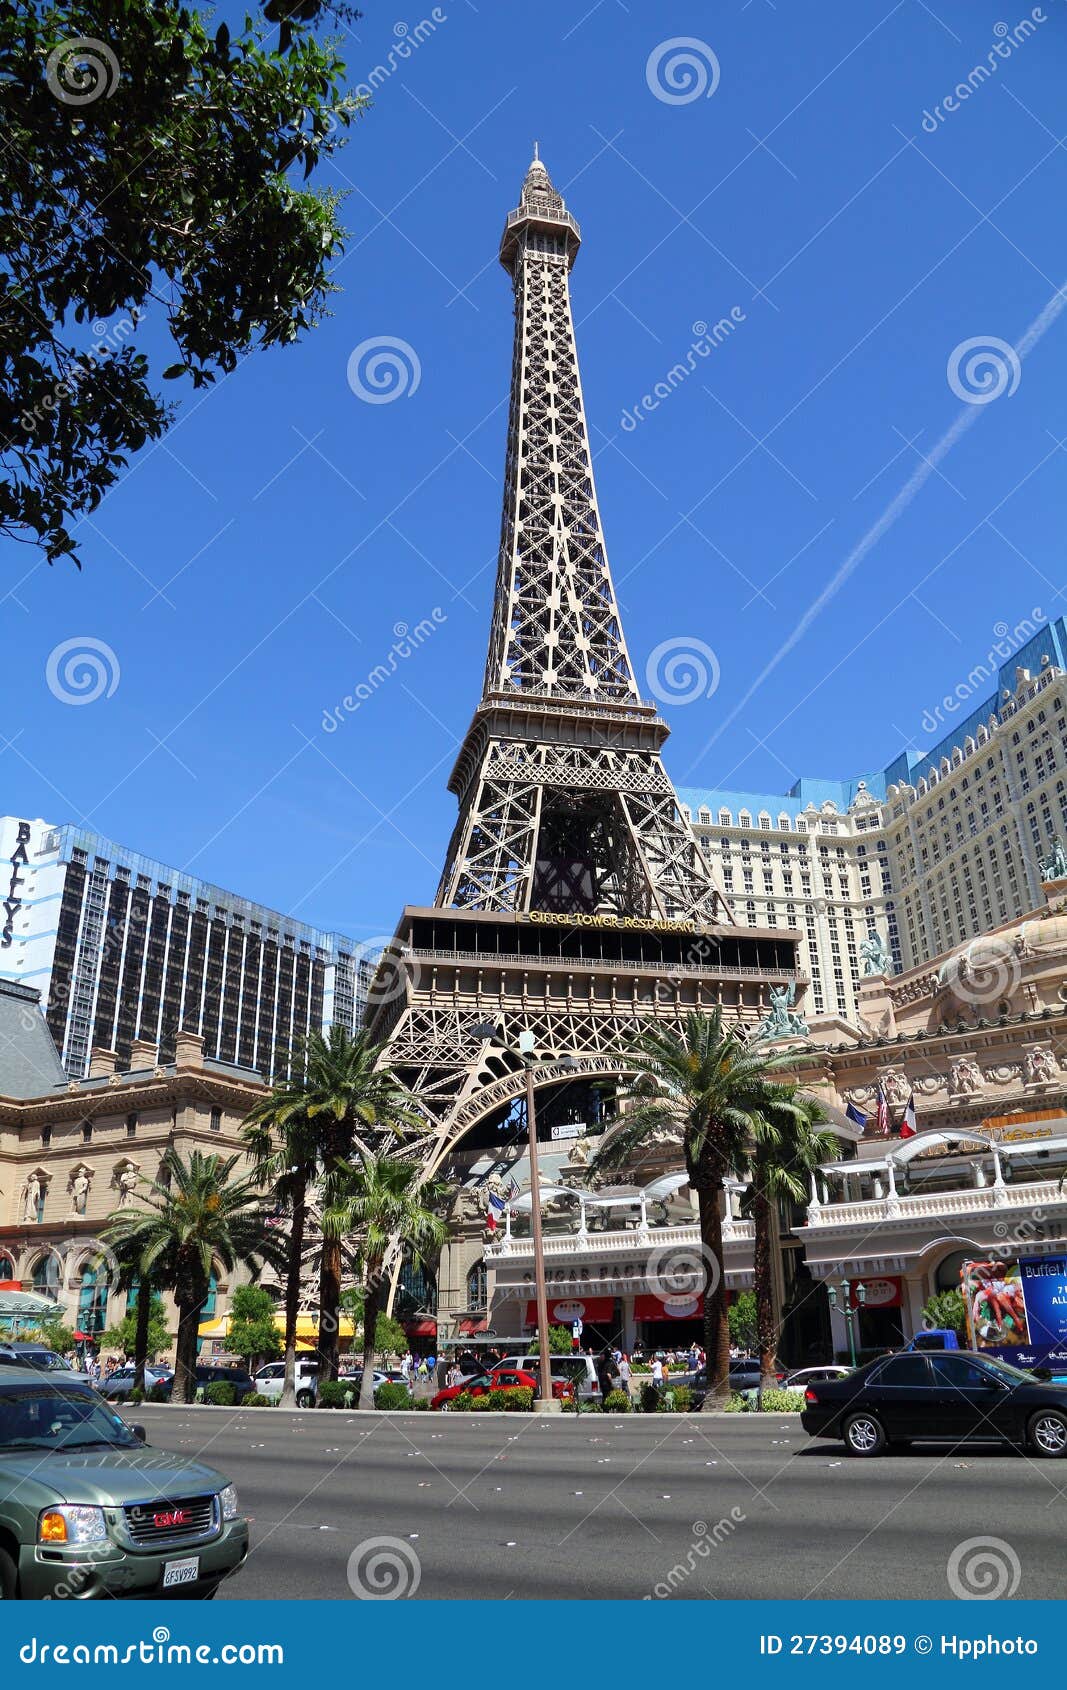 Paris Hotel And Casino